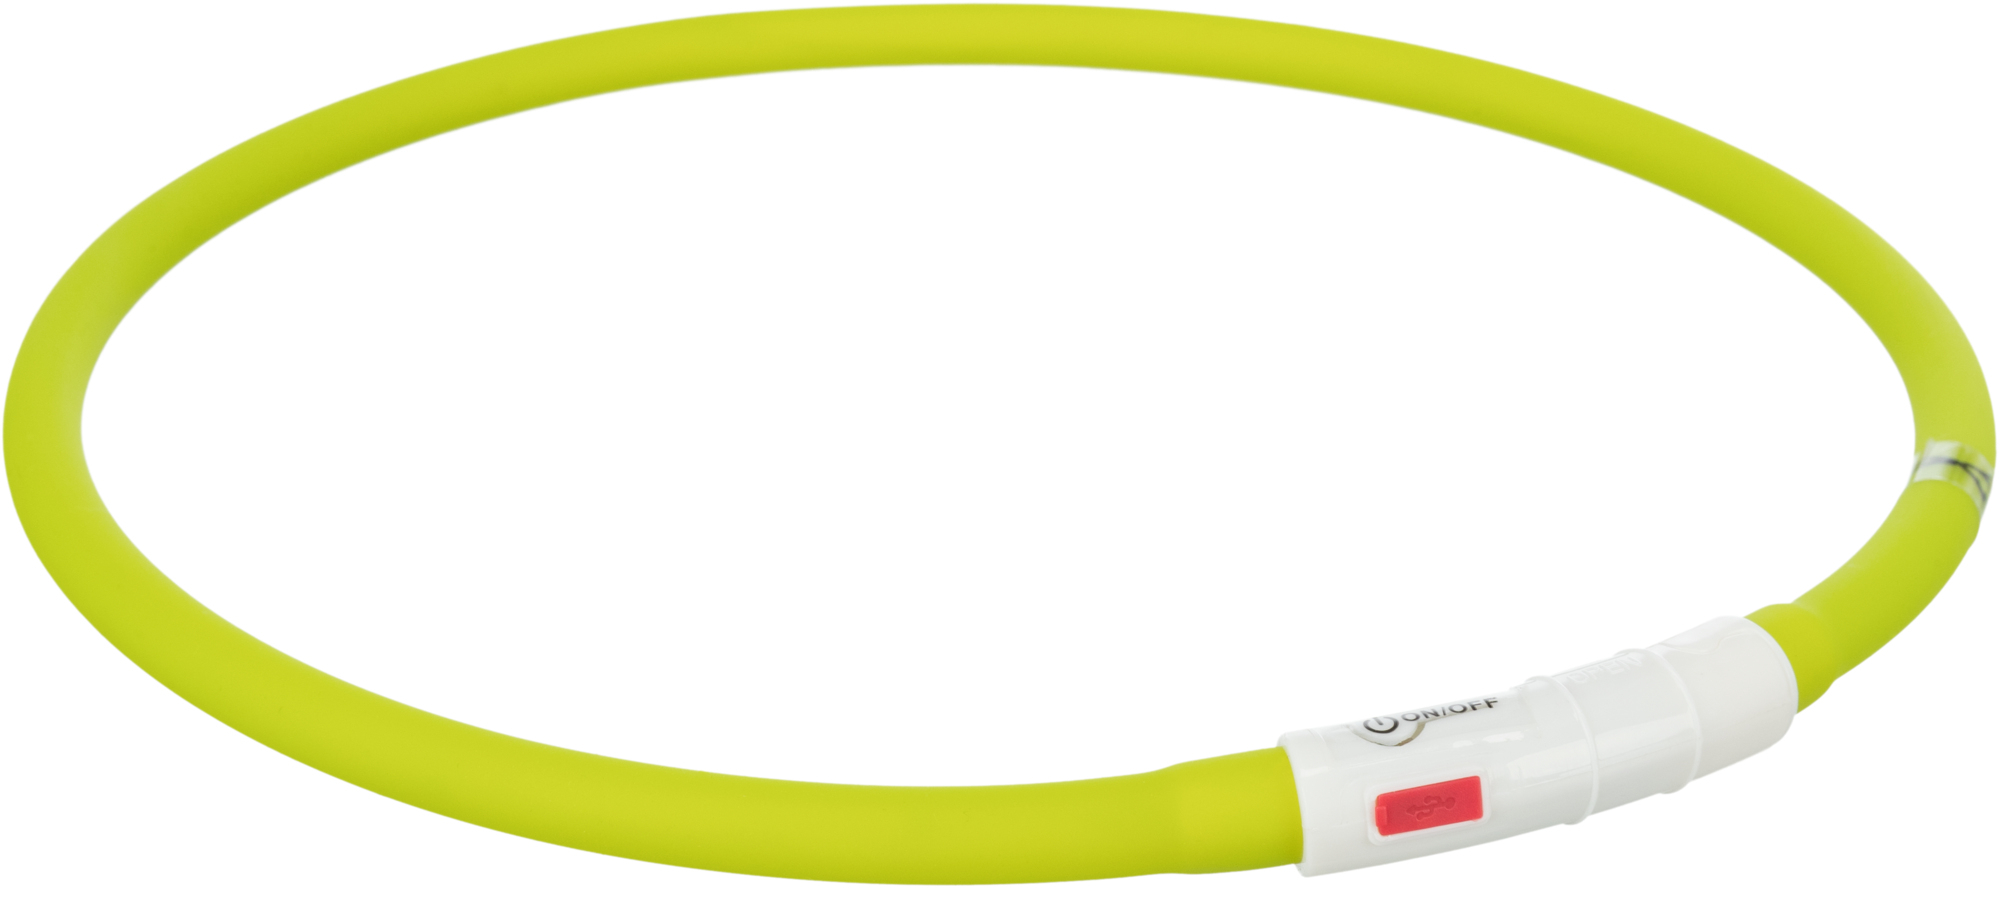 Coleira anel luminososo com conector USB - várias cores disponíveis